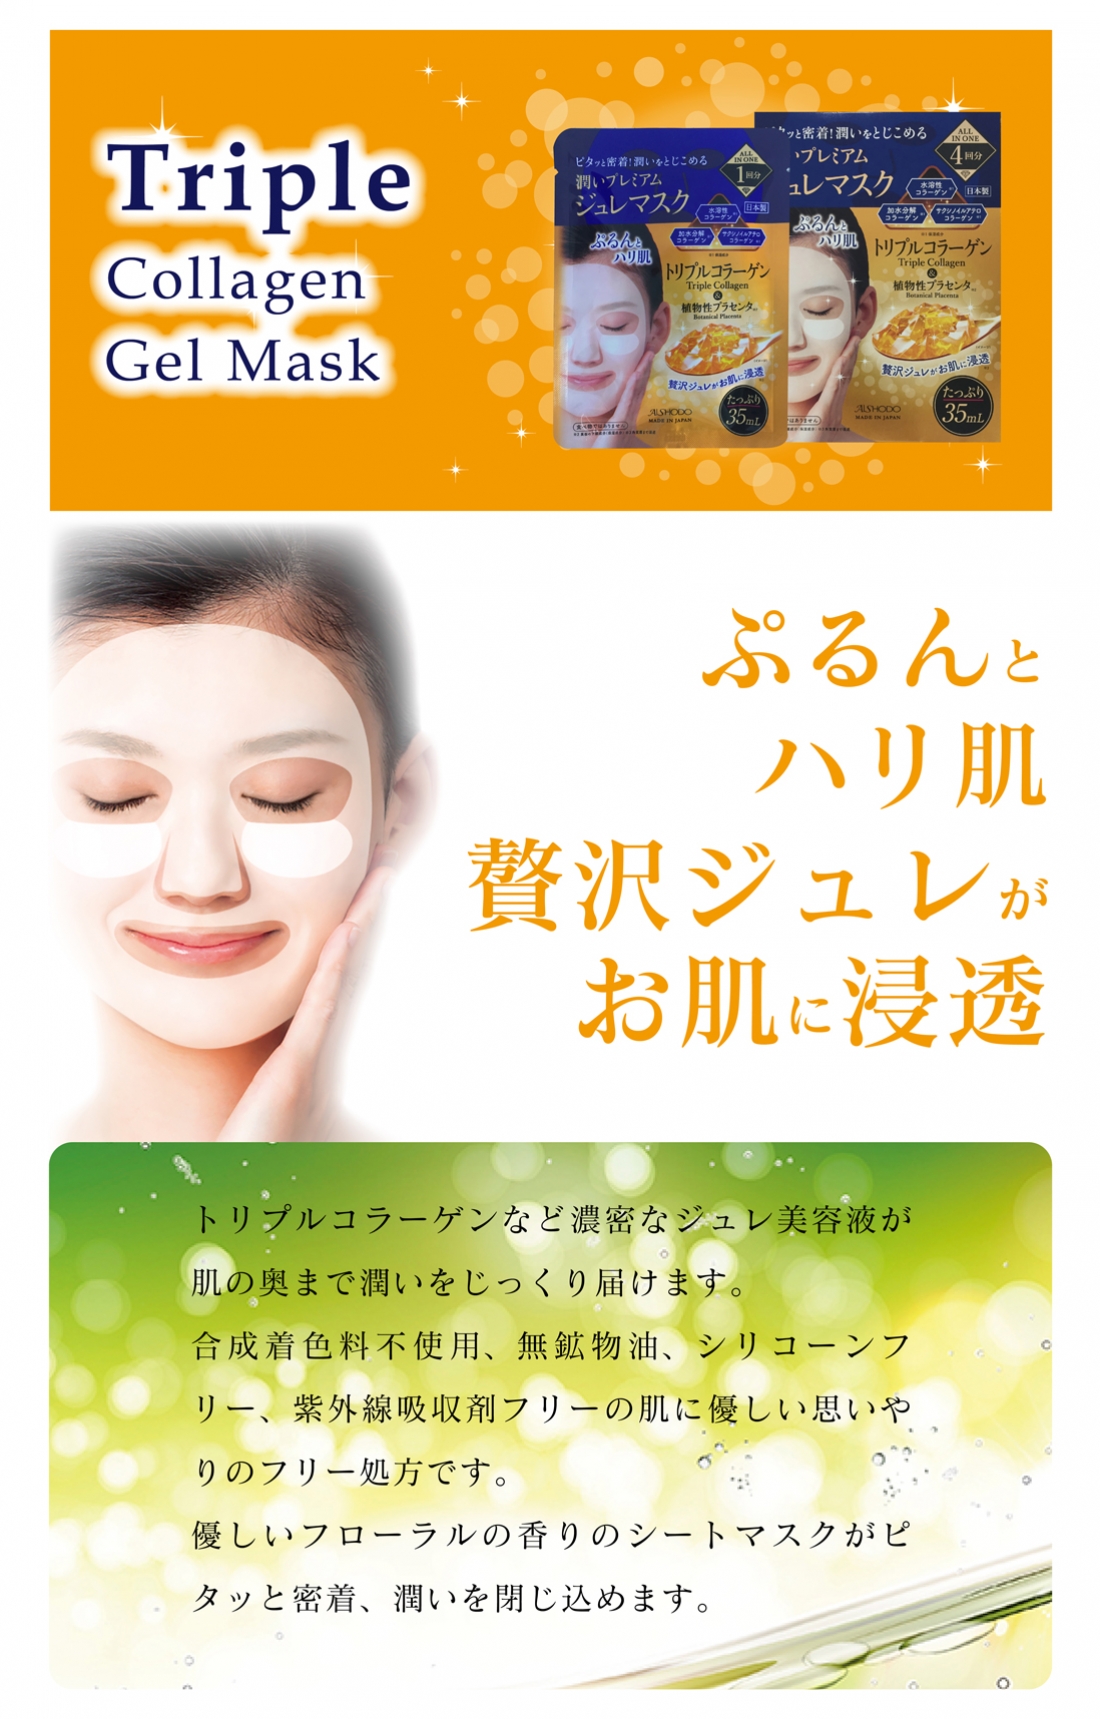 トリプルコラーゲンジュレマスク
Triple Collagen Gel Mask